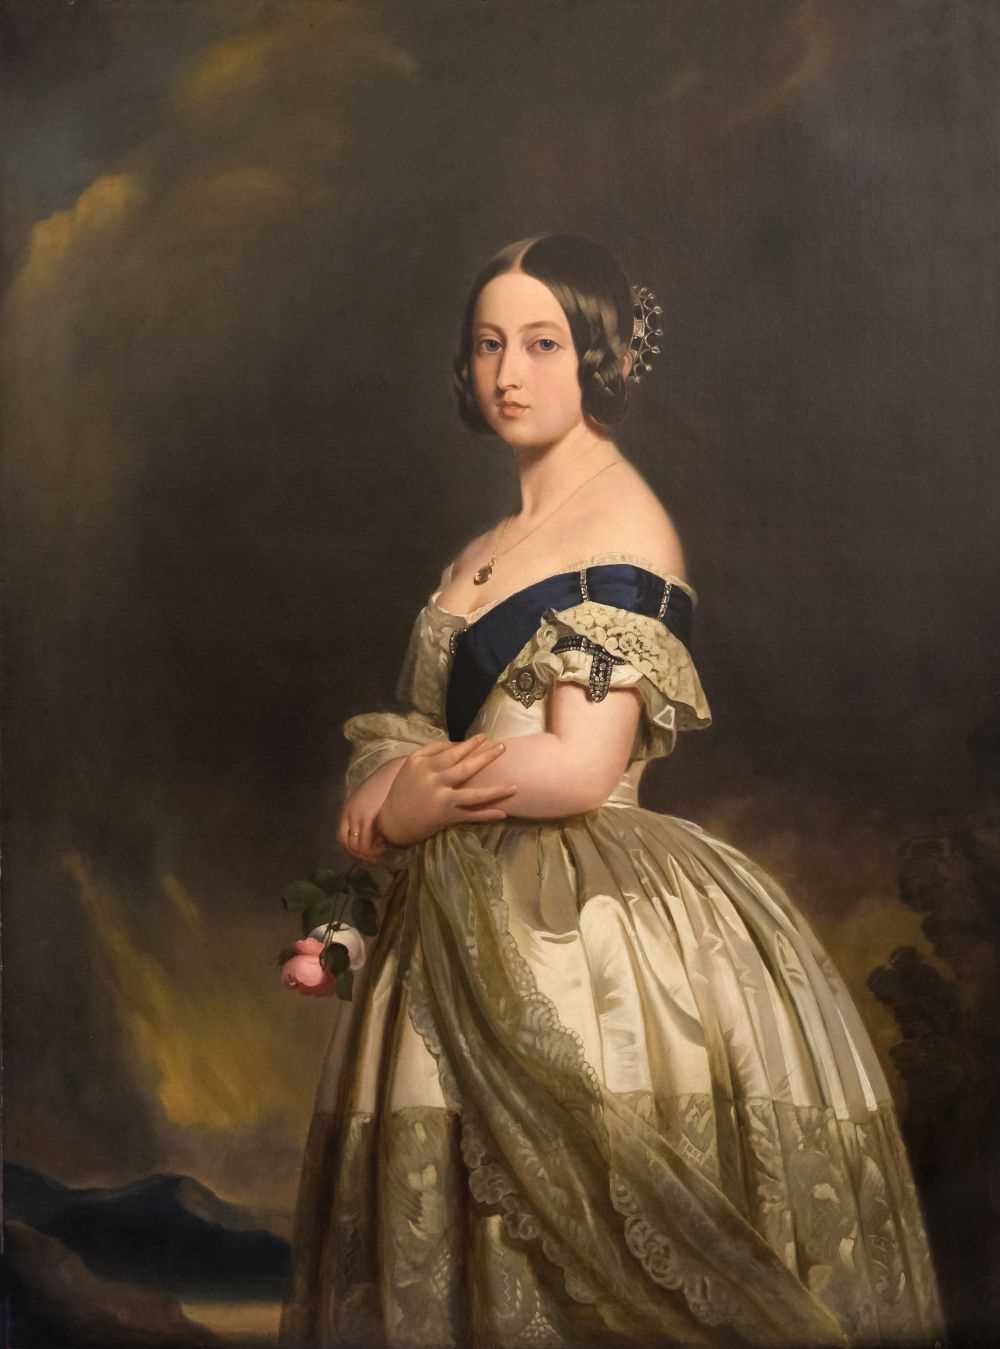 Lot 438 - Chevalier (Nicholas, 1828-1902, attributed to). Queen Victoria, after Winterhalter, circa 1857-1861